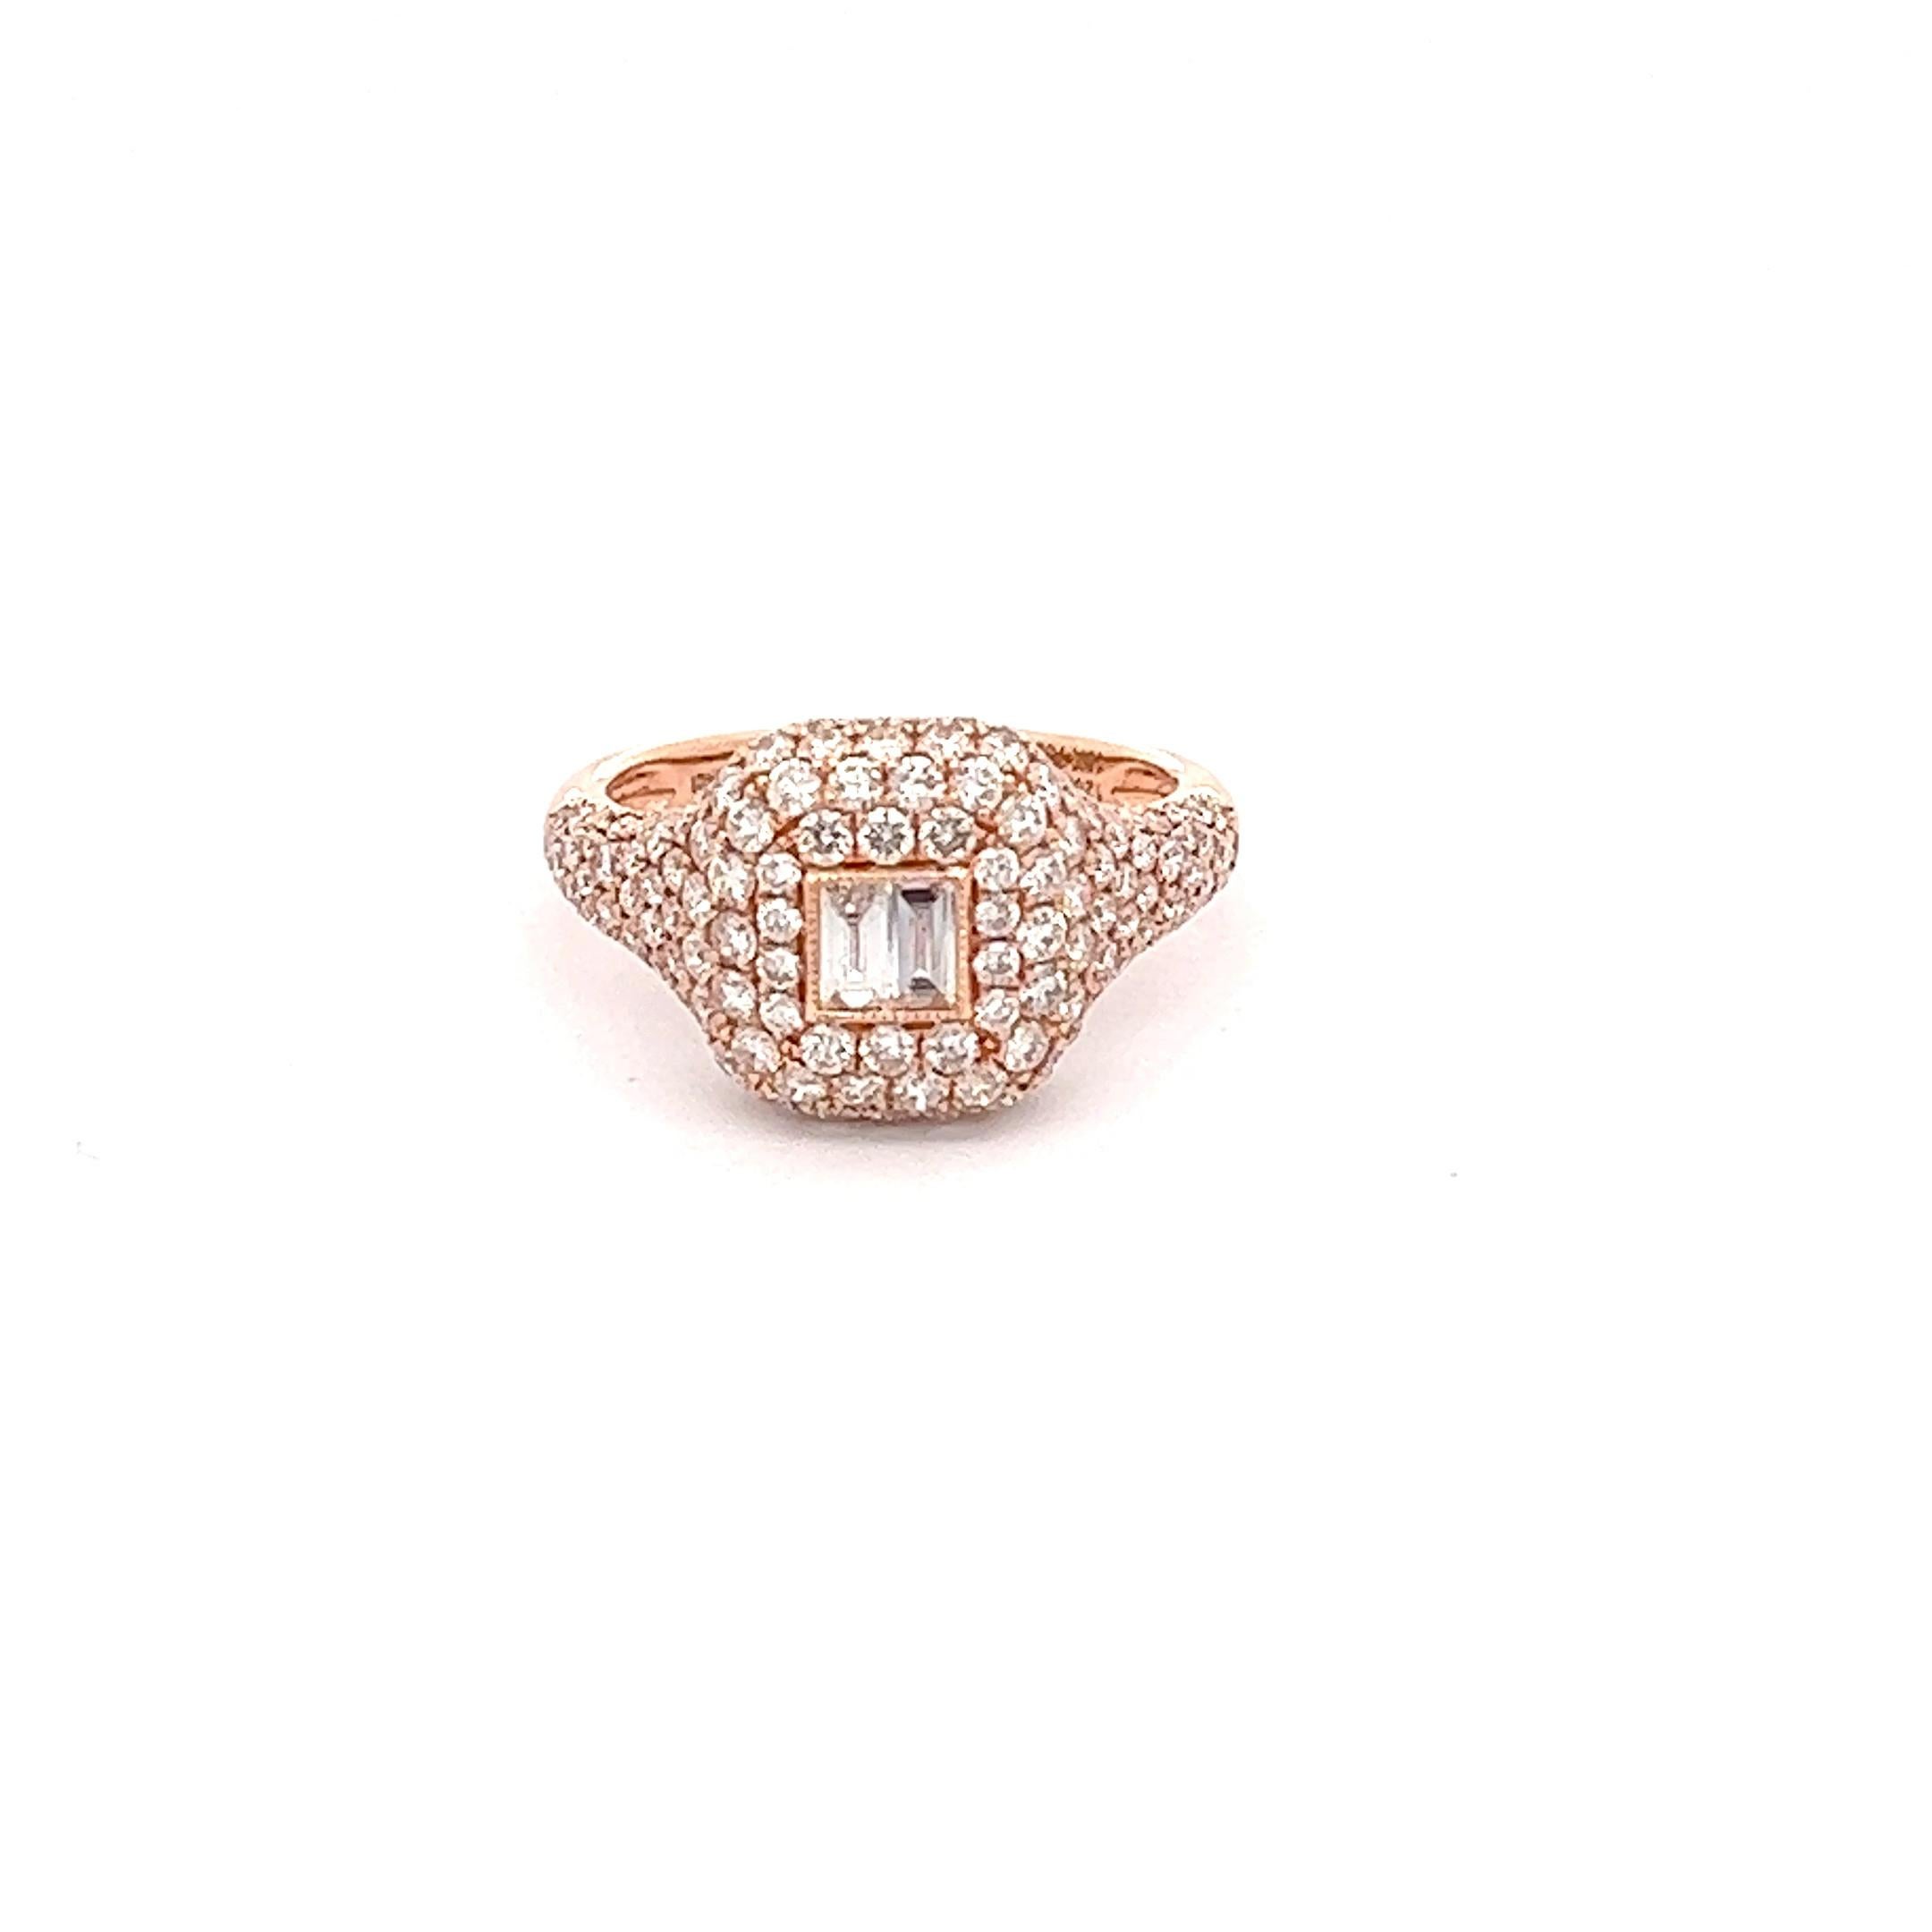 Schöner 18K Rose Gold Baguette Diamond's Ring Lady's perfekt für den Alltag oder besondere Anlässe.

18KR 3.90Gramm
152RD 1.51CT
2BD 0.13CT